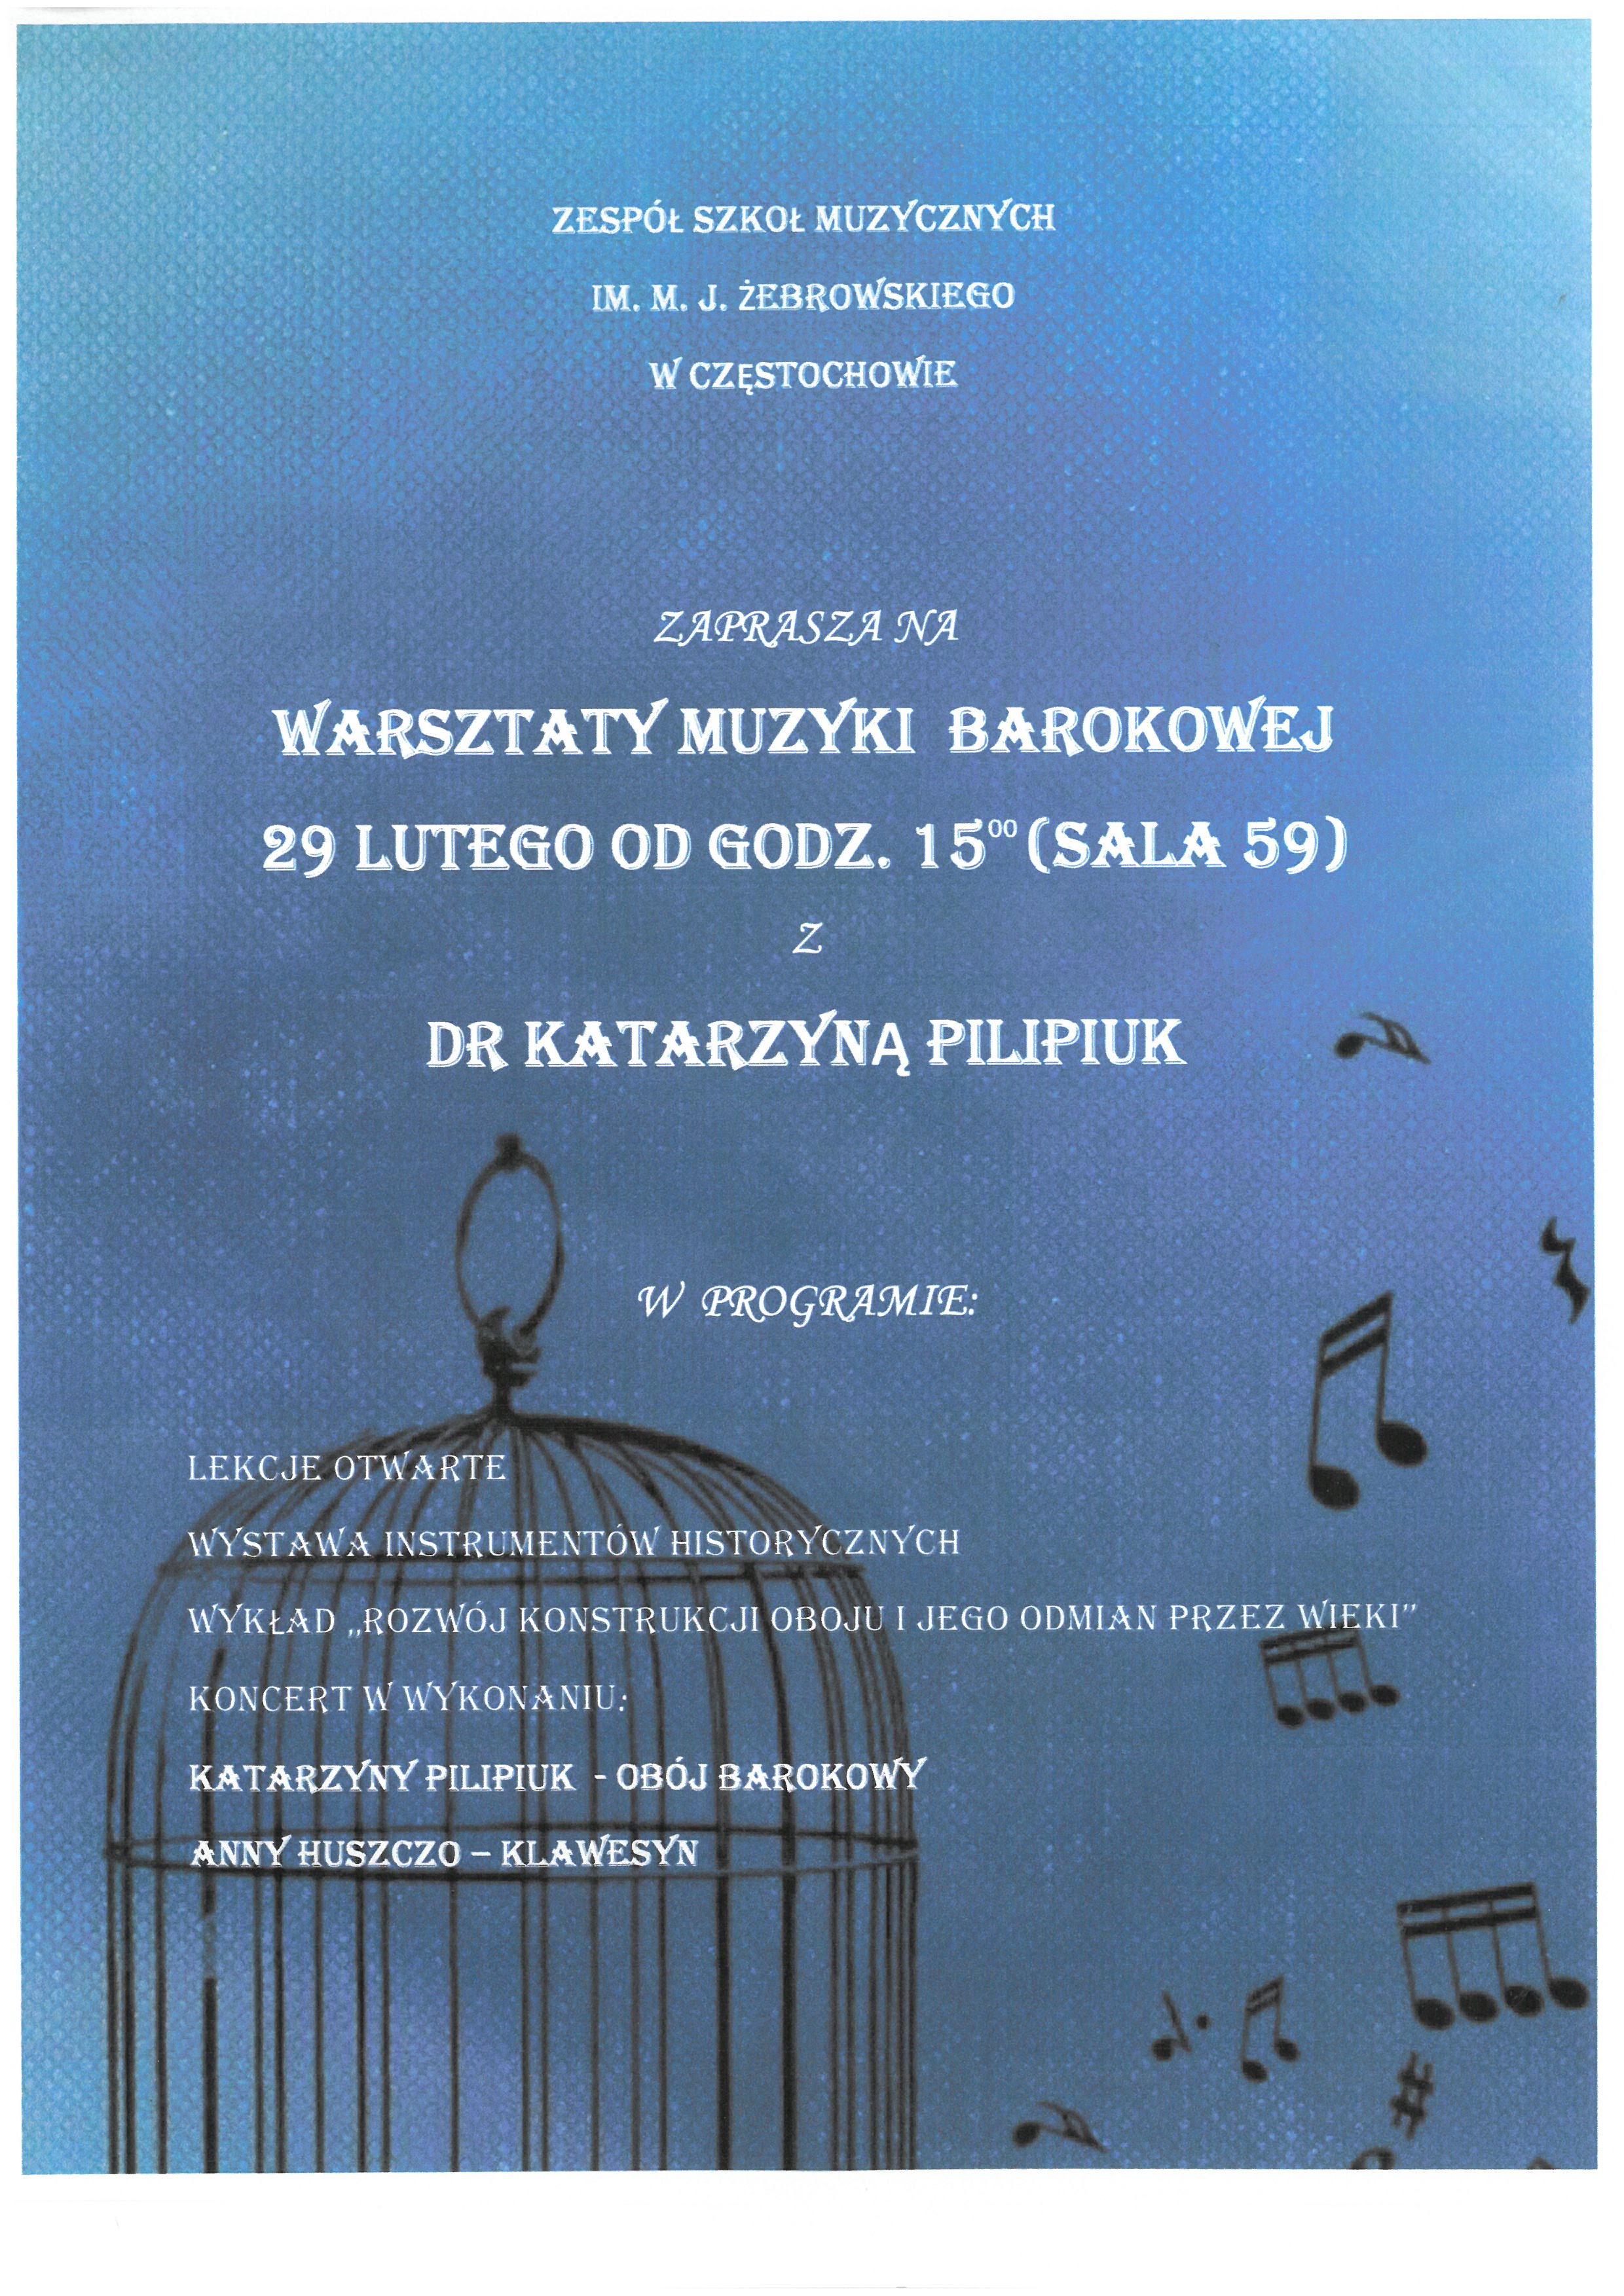 Niebieskie tło, namalowane czarne nutki i klatka dla ptaków, informacje dotyczące warsztatów muzyki barokowej z dr Katarzyną Pilipiuk